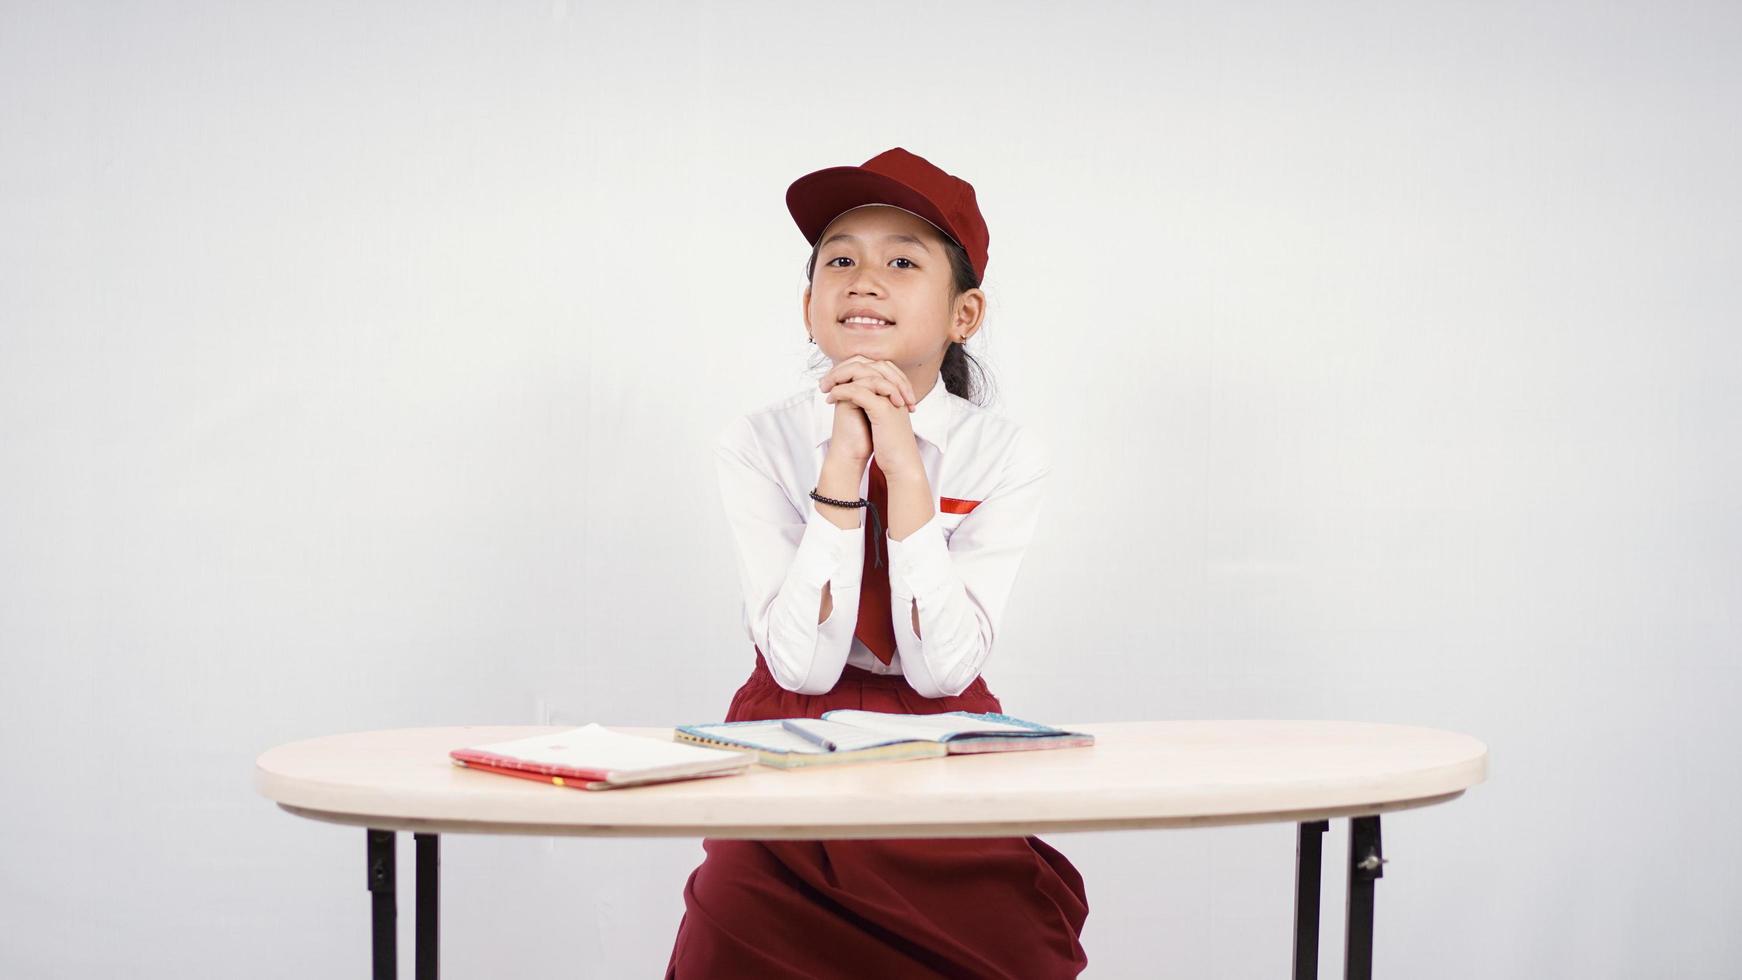 ragazza asiatica della scuola elementare che studia con passione isolata su fondo bianco foto